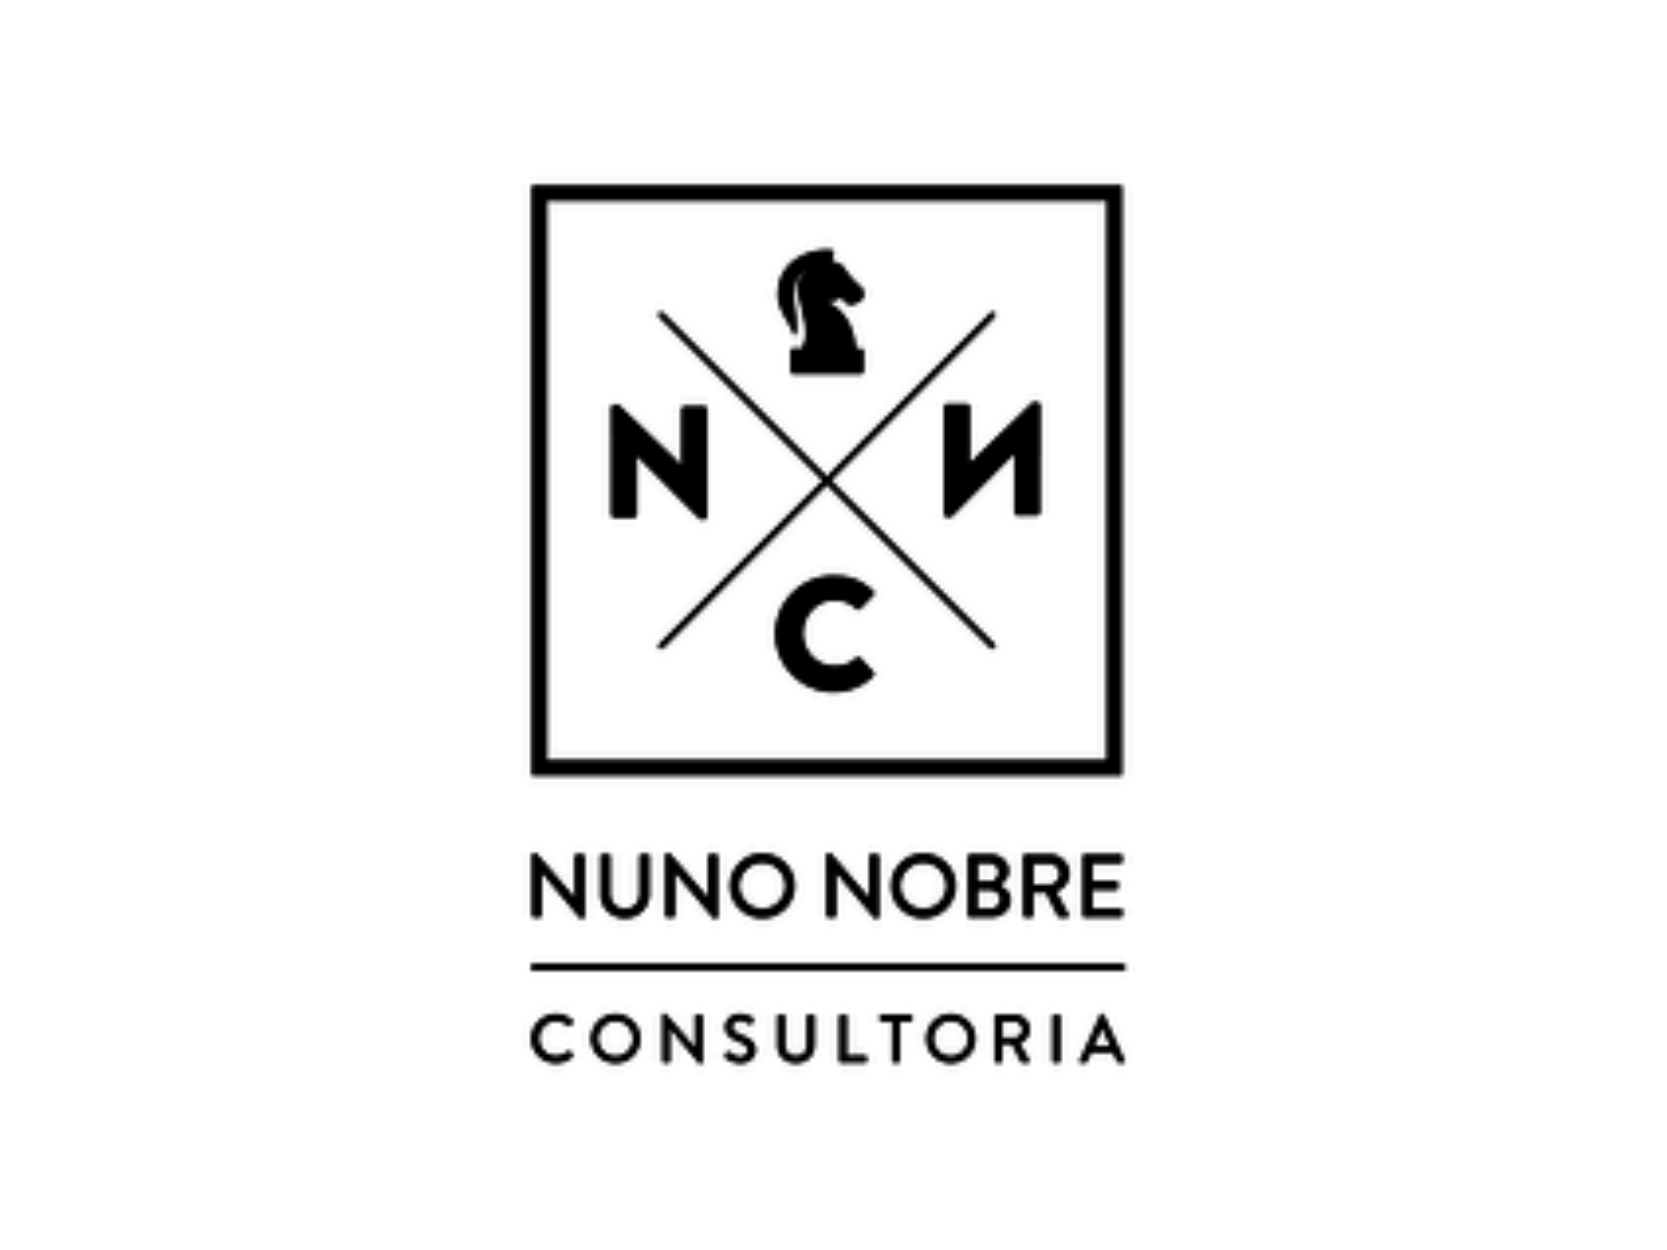 Nuno Nobre Consultoria